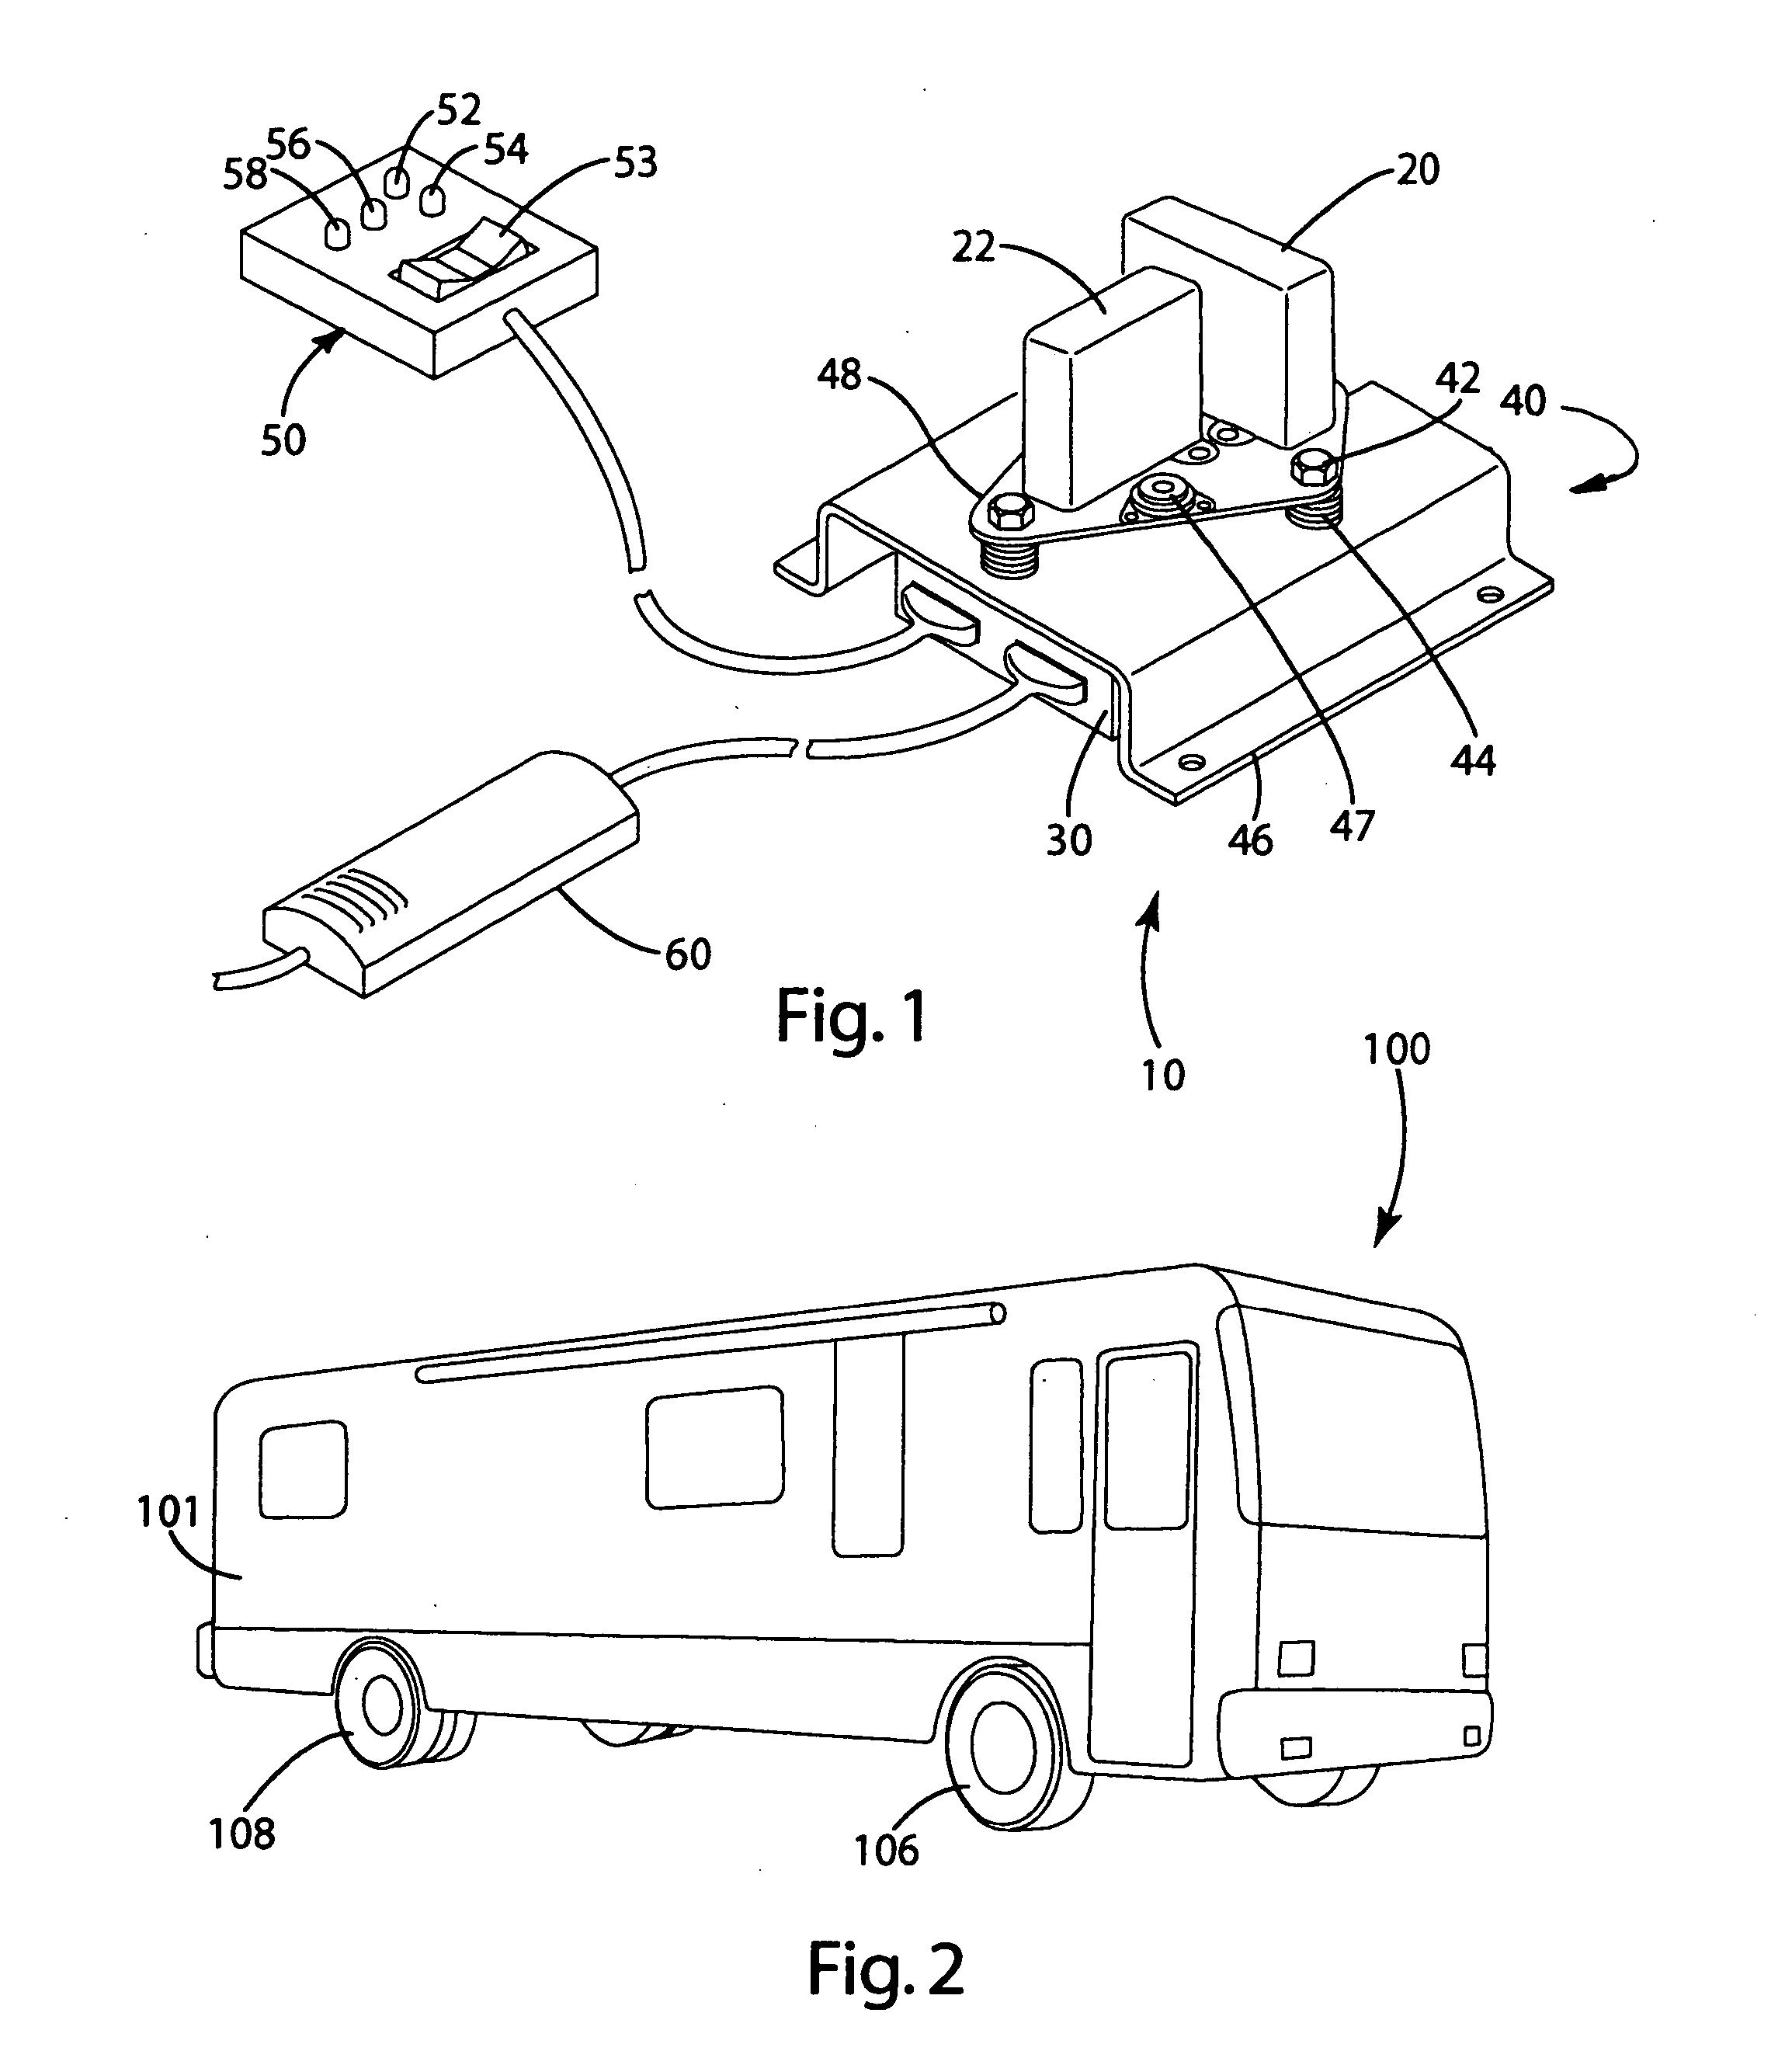 Vehicle leveling system